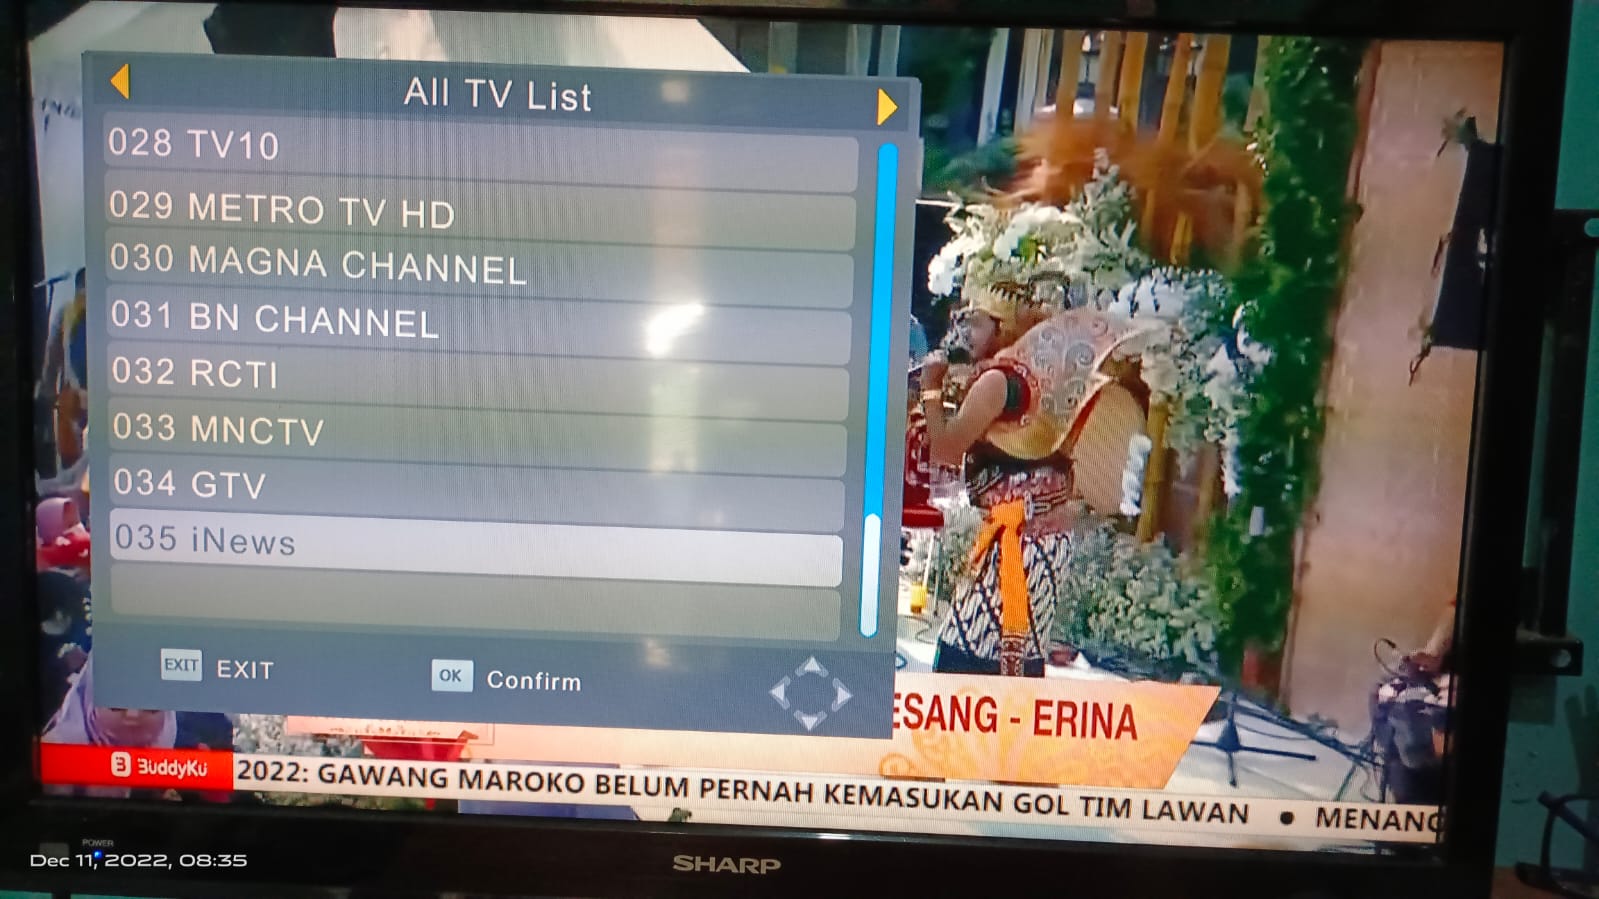 siaran TV Digital diterima di wilayah Jogja